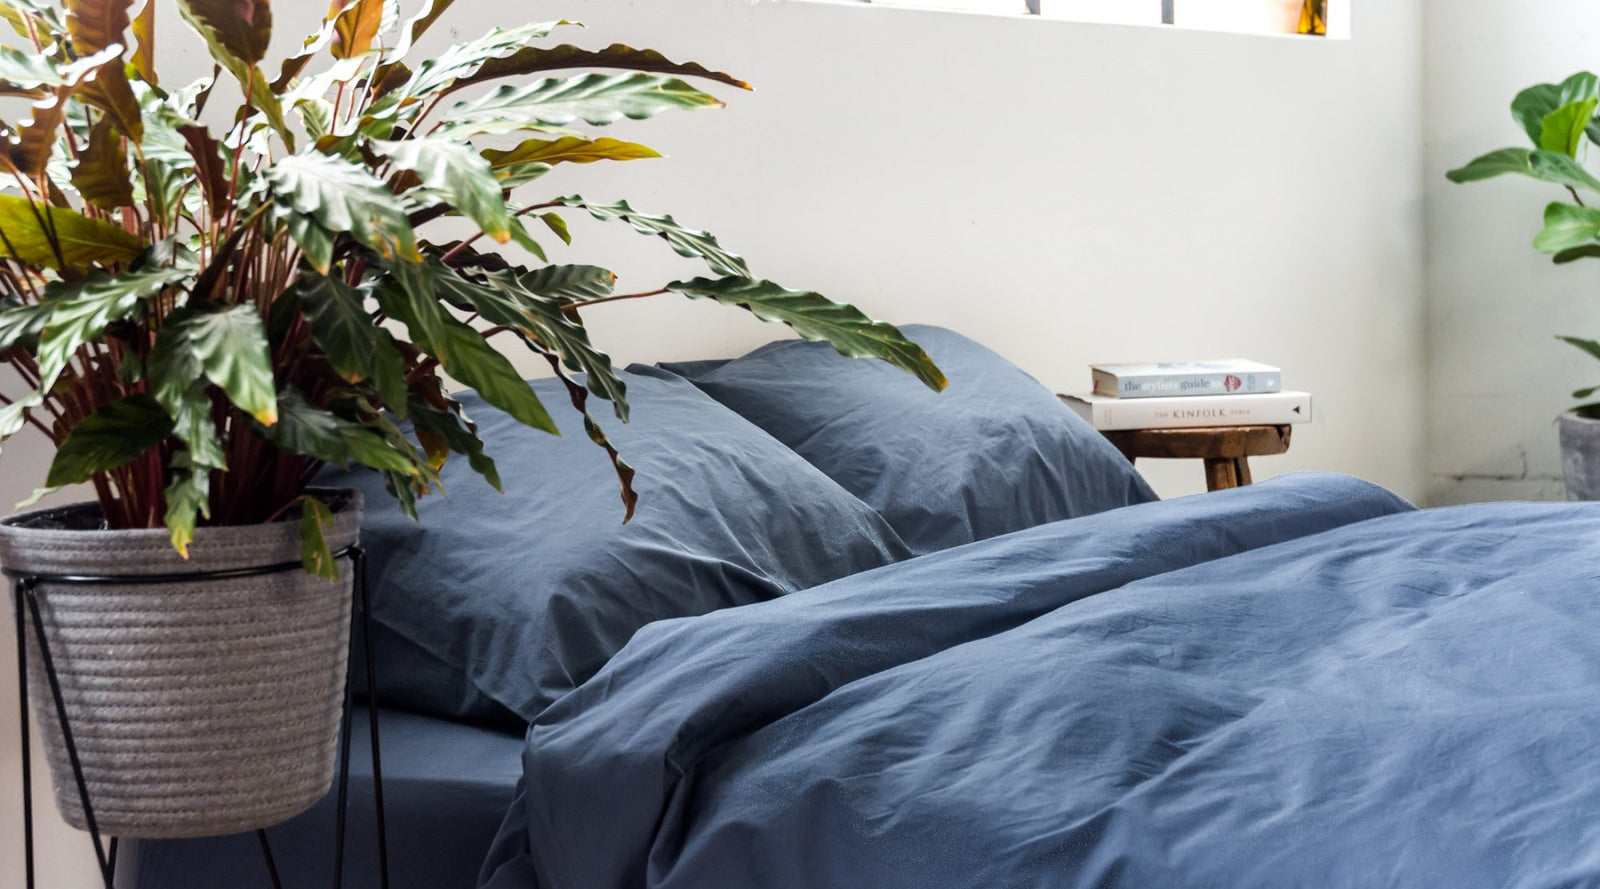 Best Indoor Plants For Bedrooms The Good Sheet